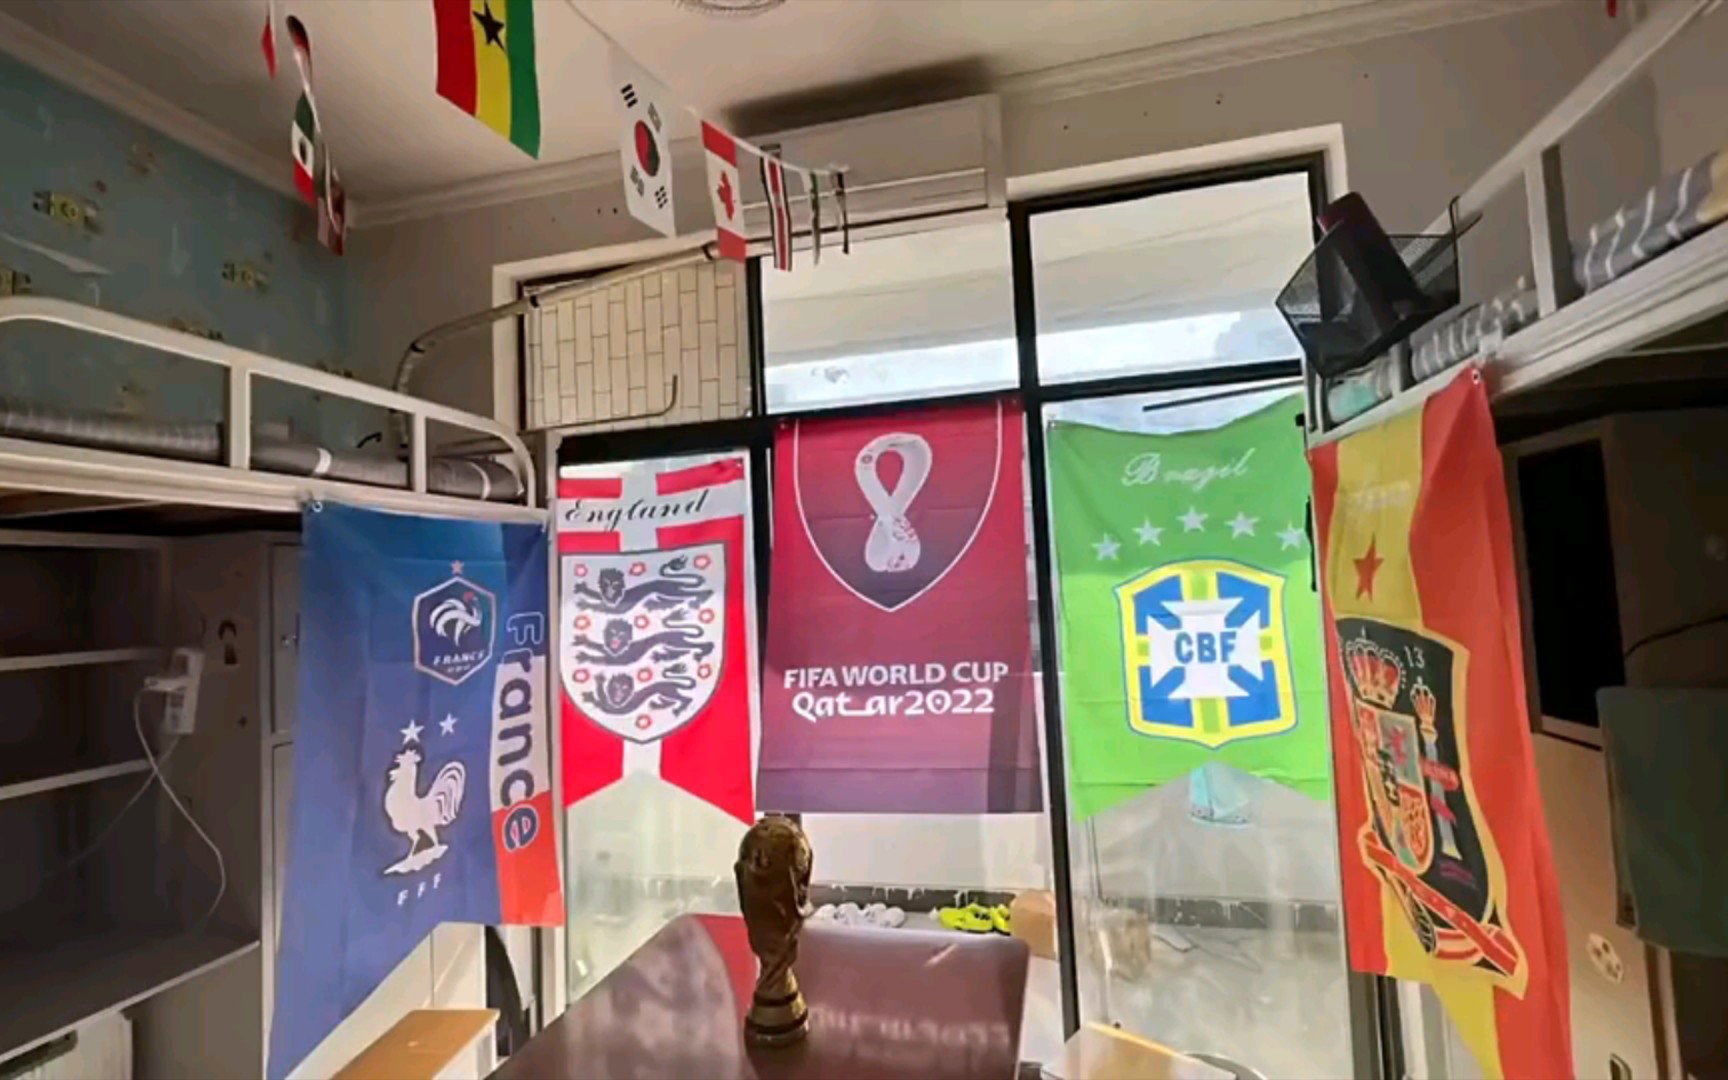 某大学宿舍已经提前进入卡塔尔世界杯时间